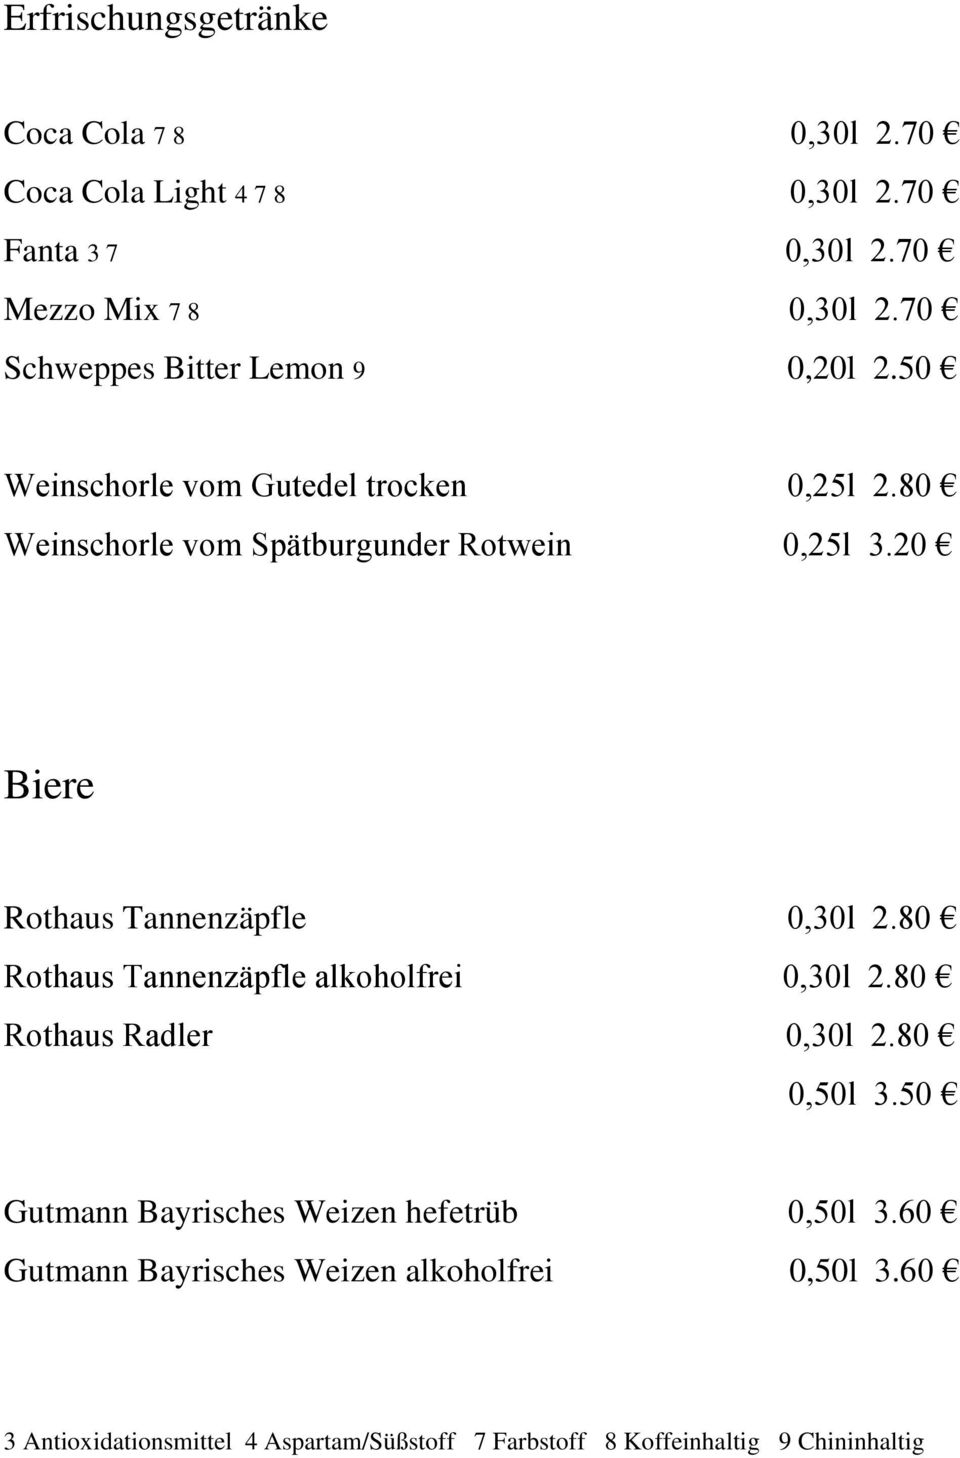 20 Biere Rothaus Tannenzäpfle 0,30l 2.80 Rothaus Tannenzäpfle alkoholfrei 0,30l 2.80 Rothaus Radler 0,30l 2.80 0,50l 3.